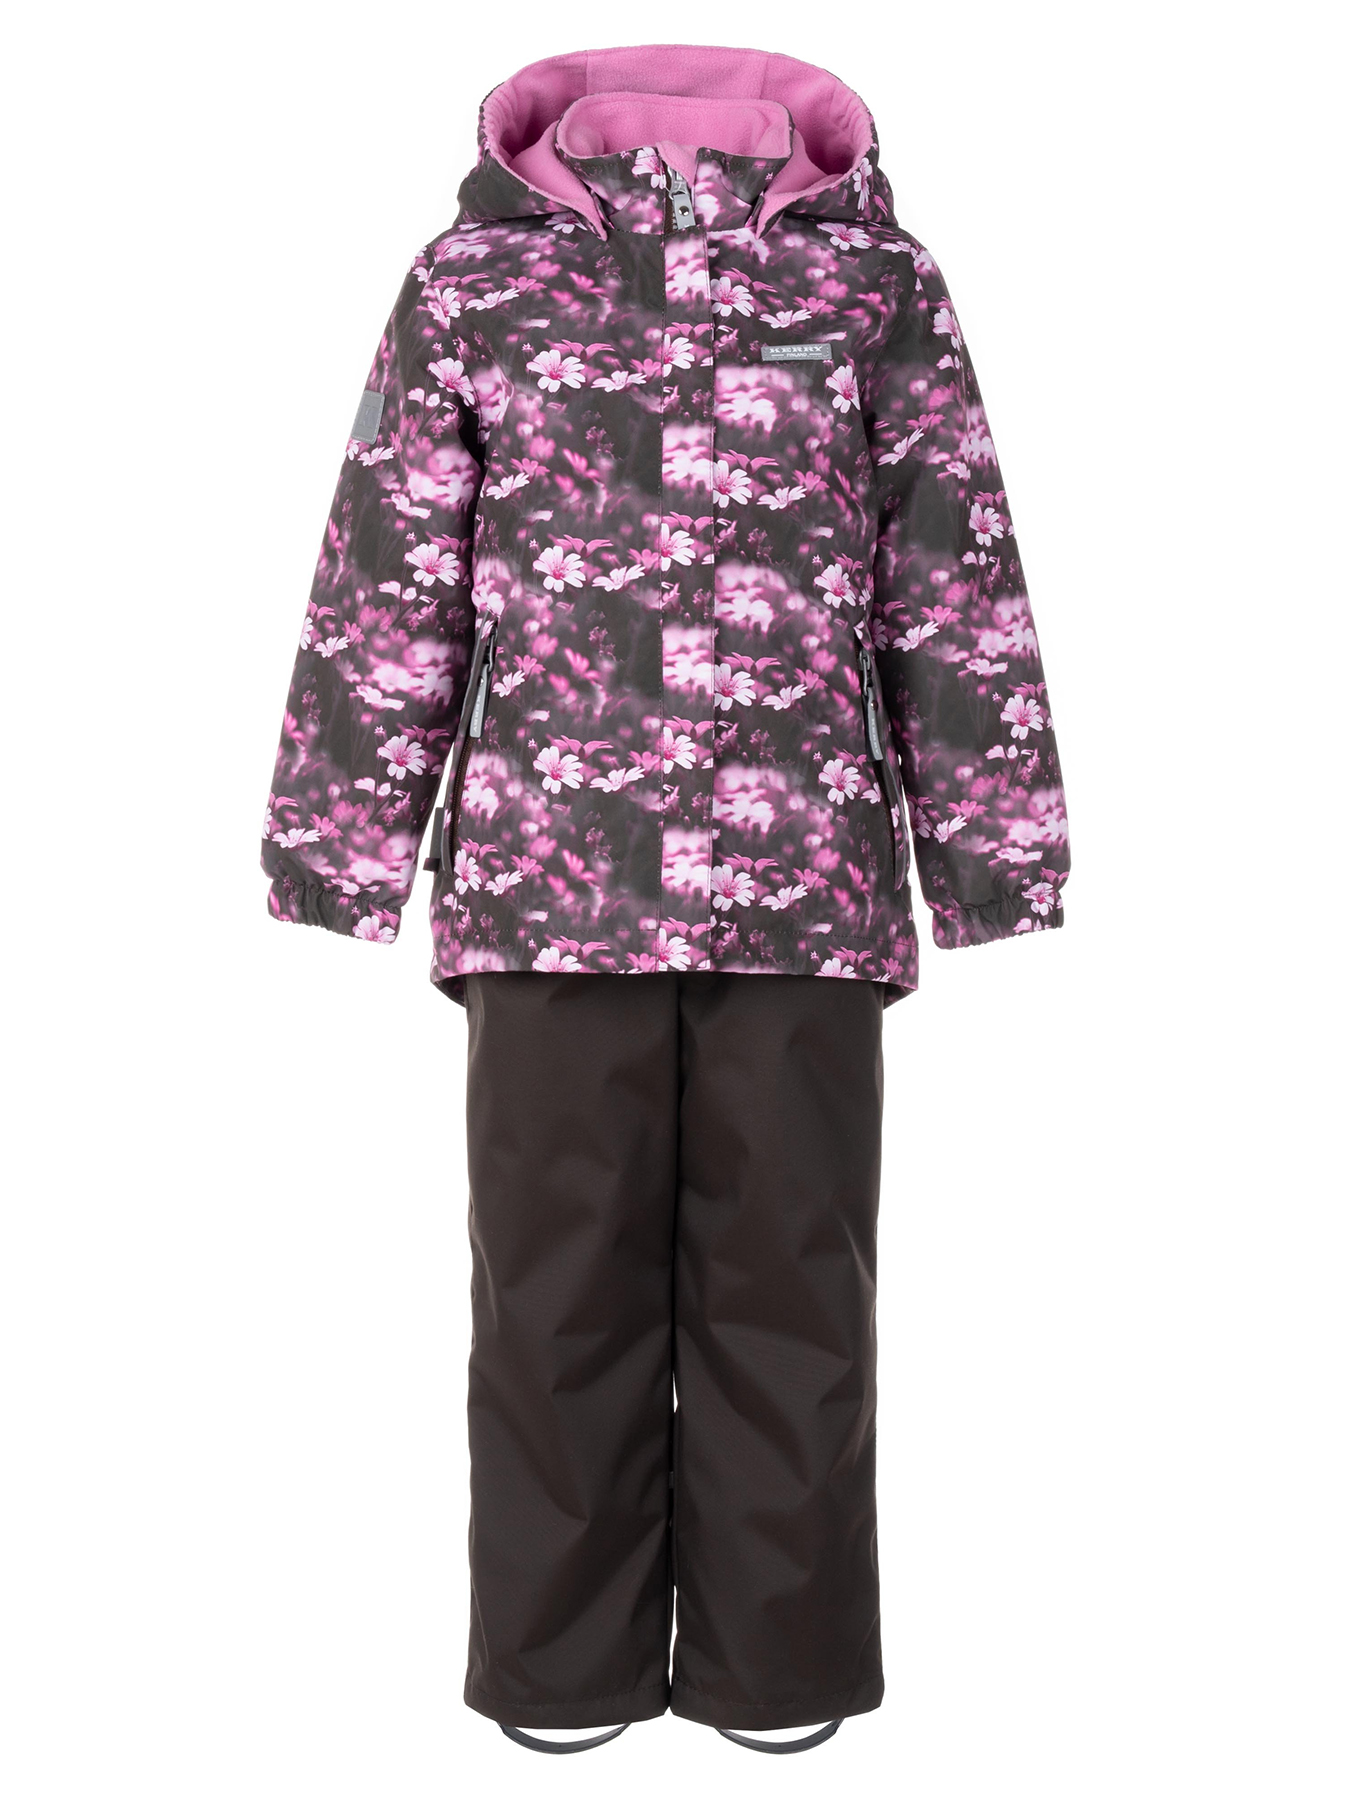 Комплект верхней одежды KERRY HEDVIG K24036A, 3810-темно-коричневый с цветами, 110